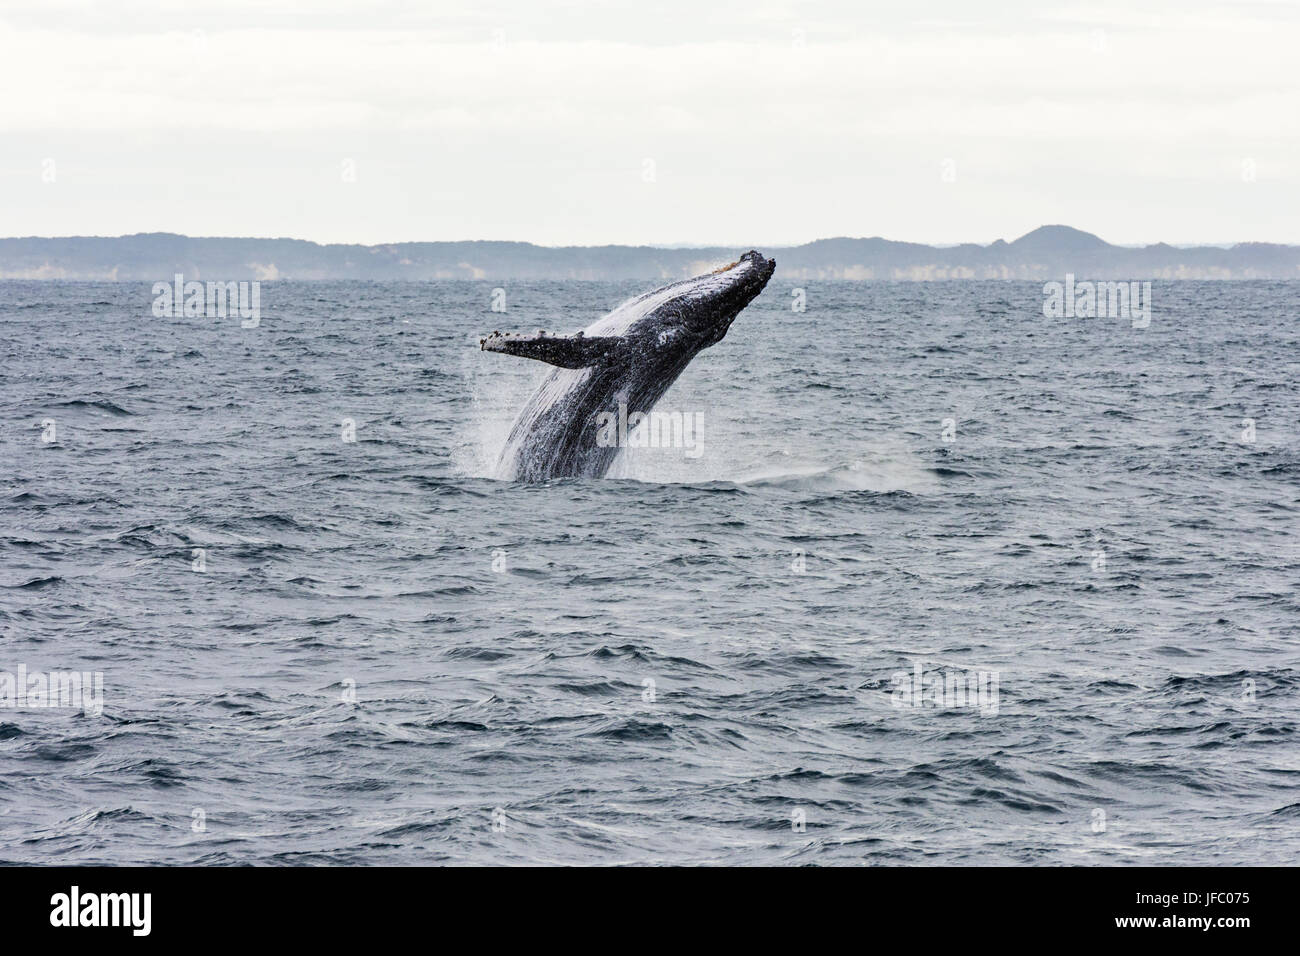 Un humpback whale breaching en Baie Flinders, au large de la côte de Augusta, Australie occidentale, Australie Banque D'Images